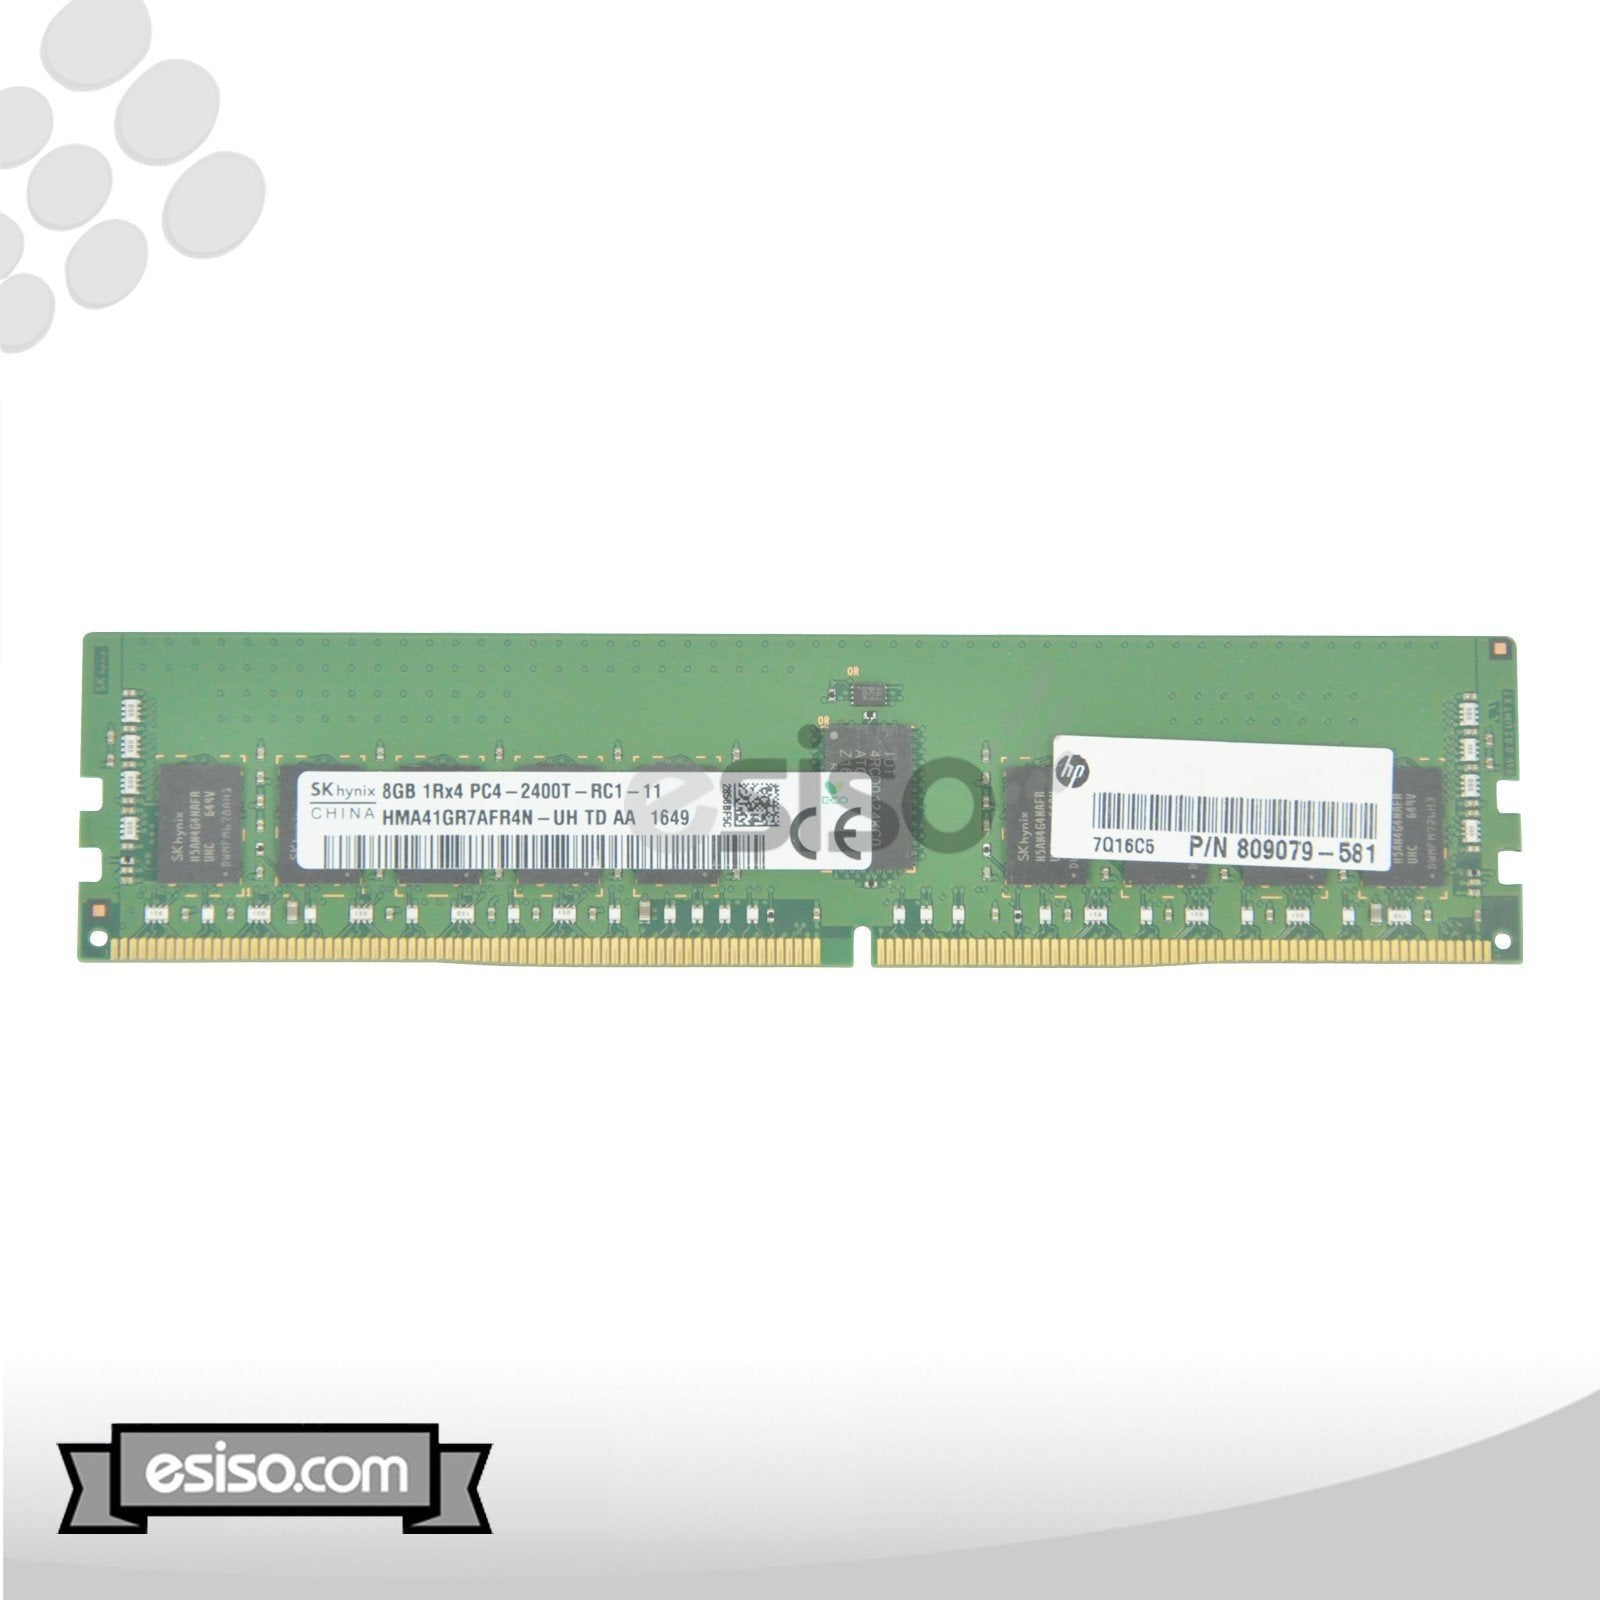 809079-581 HPE 8GB 1RX4 PC4-2400T DDR4 MEMORY MODULE (1X8GB) M393A1G40DB1-CRC